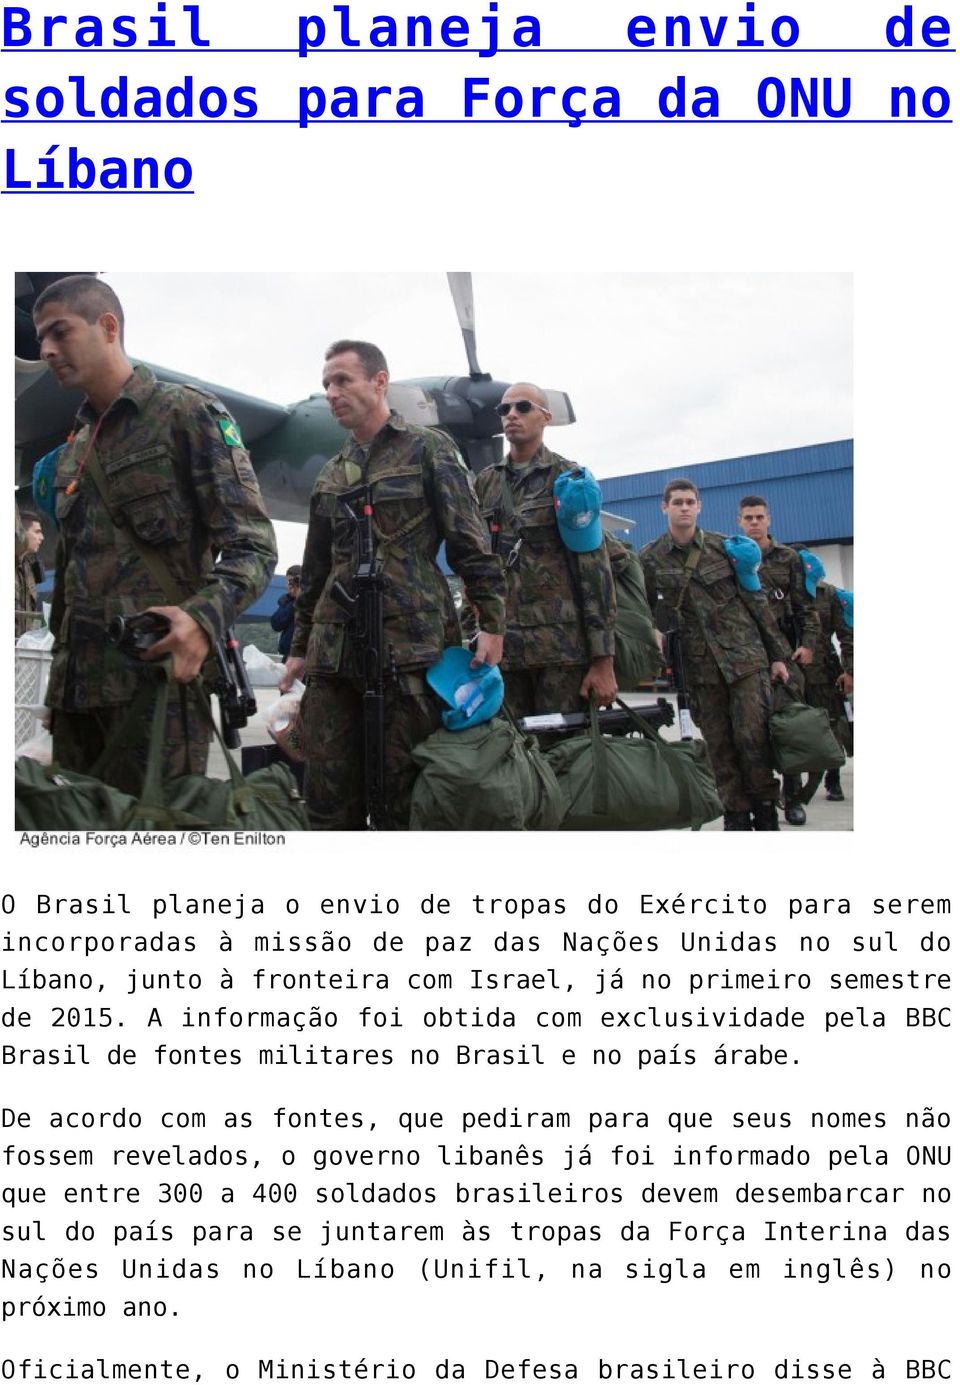 De acordo com as fontes, que pediram para que seus nomes não fossem revelados, o governo libanês já foi informado pela ONU que entre 300 a 400 soldados brasileiros devem desembarcar